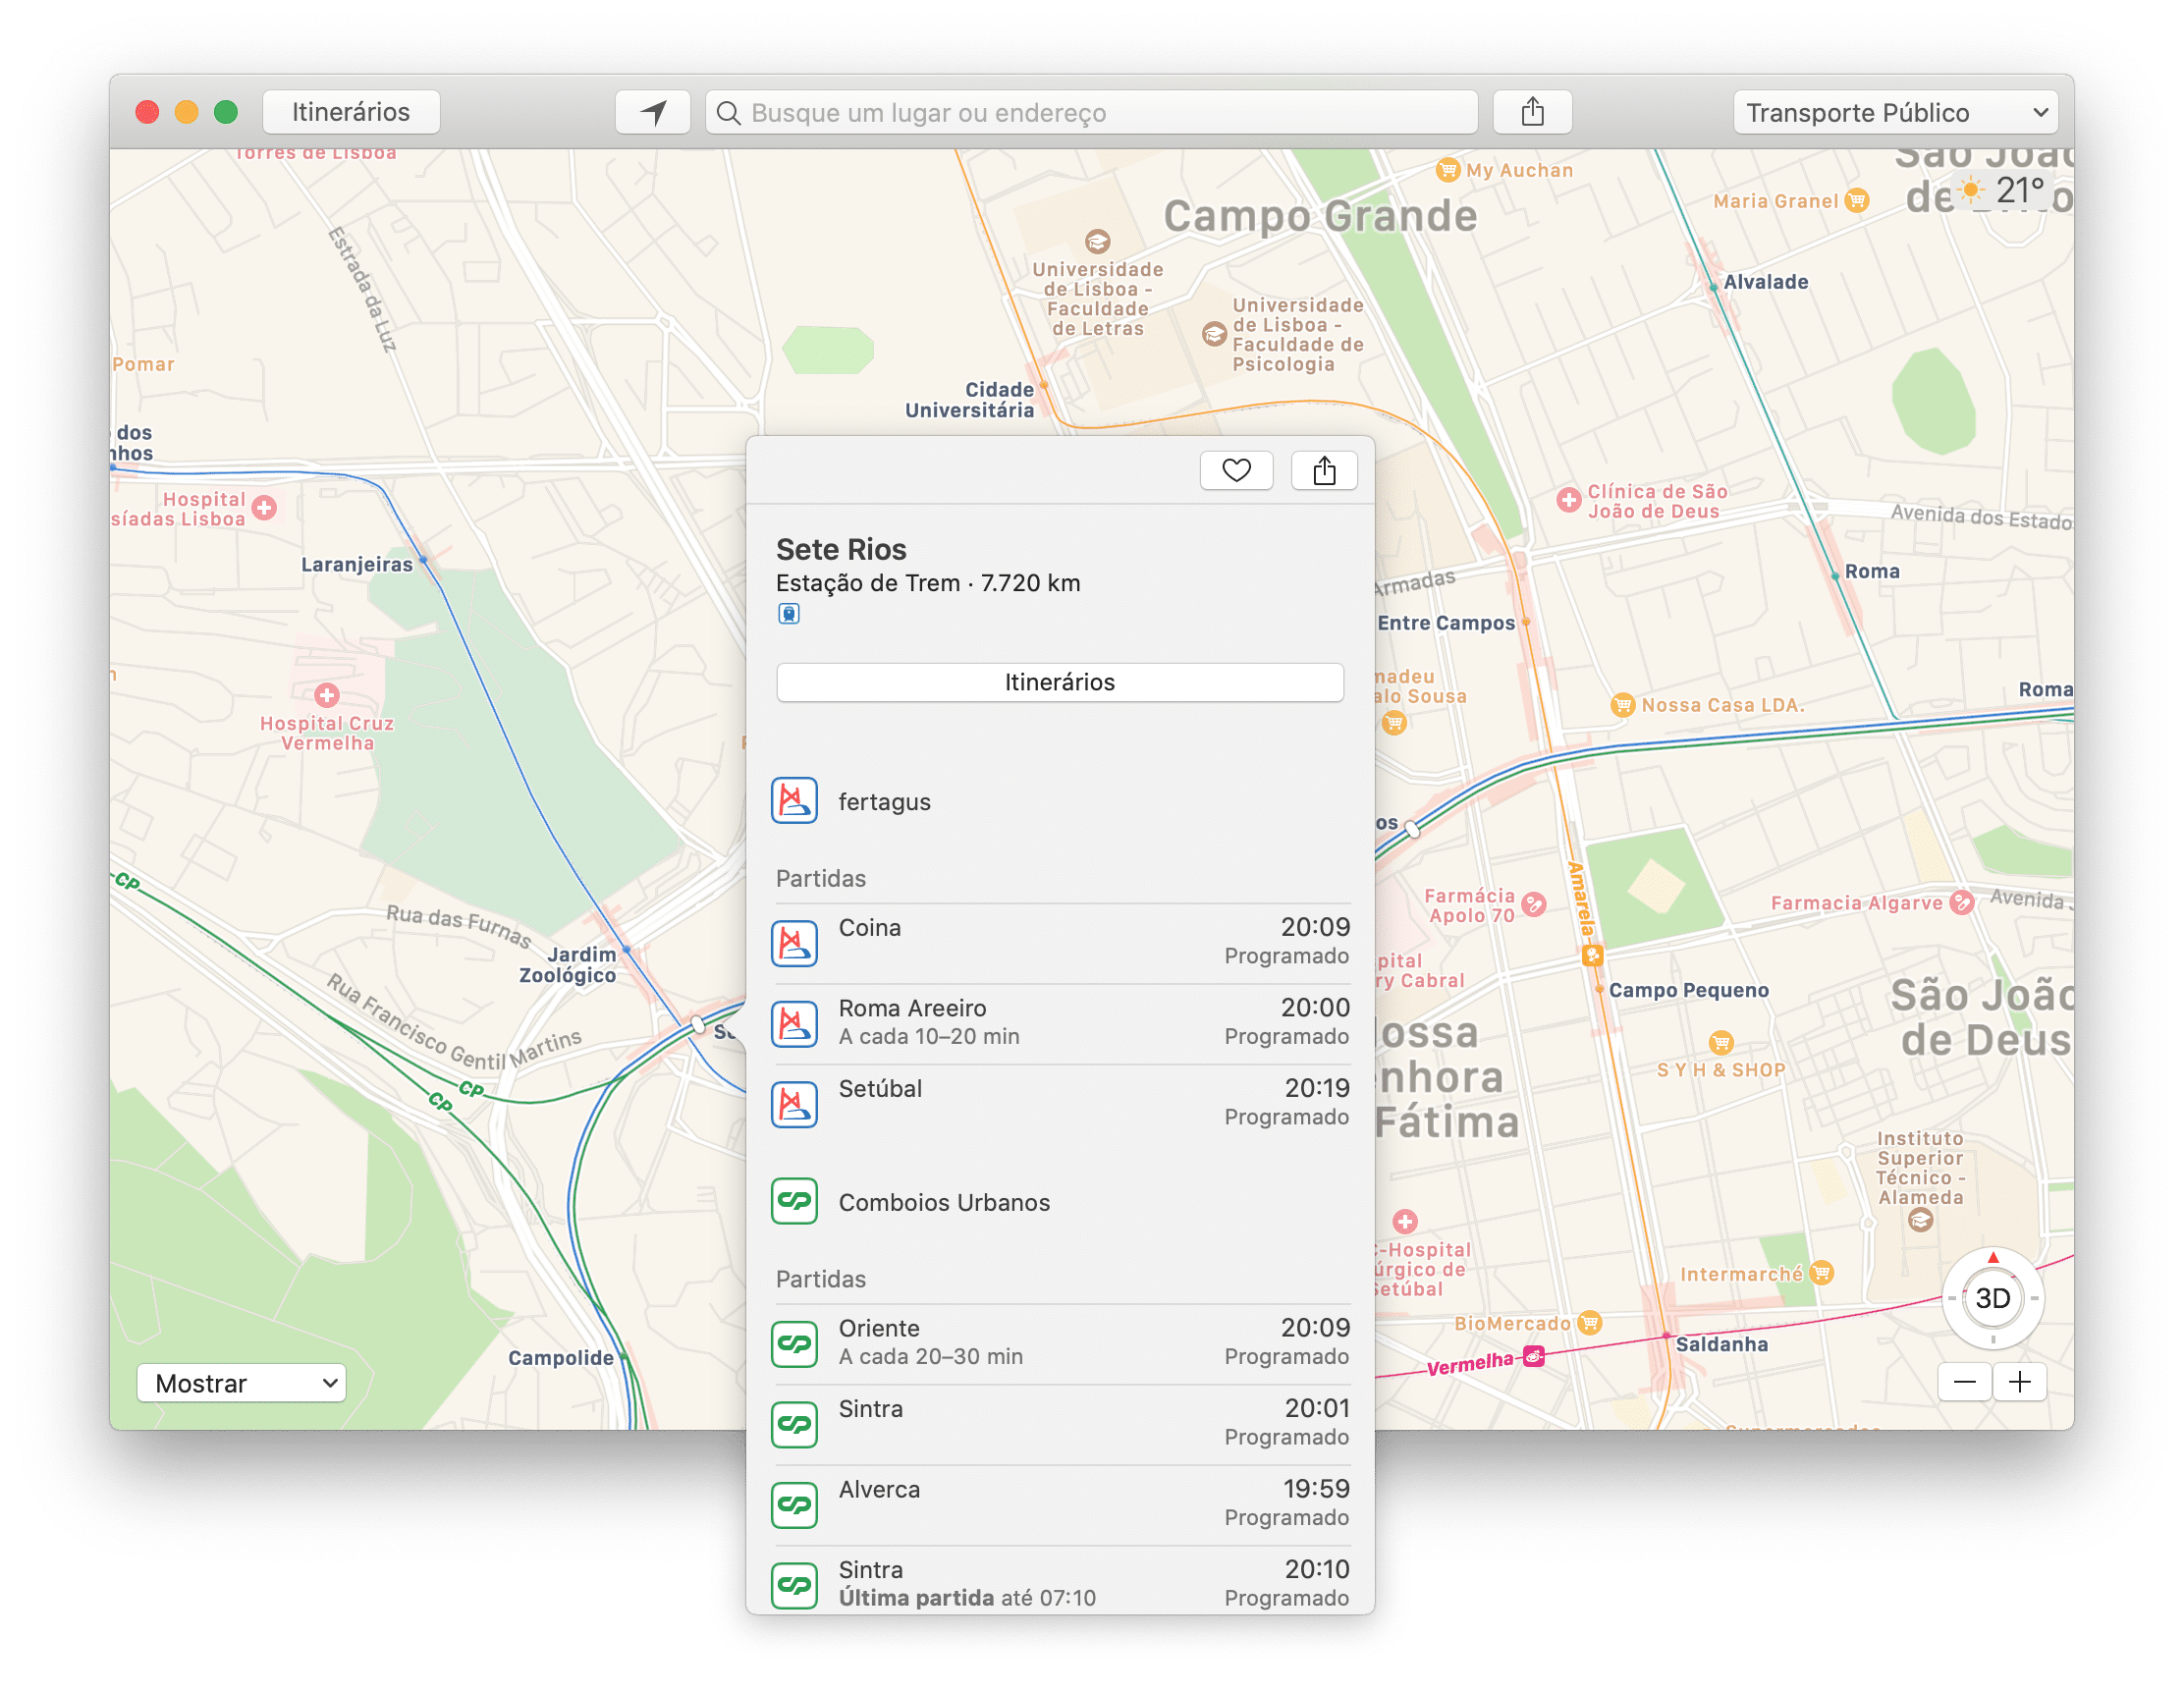 Información de transporte público en Apple Maps en Lisboa